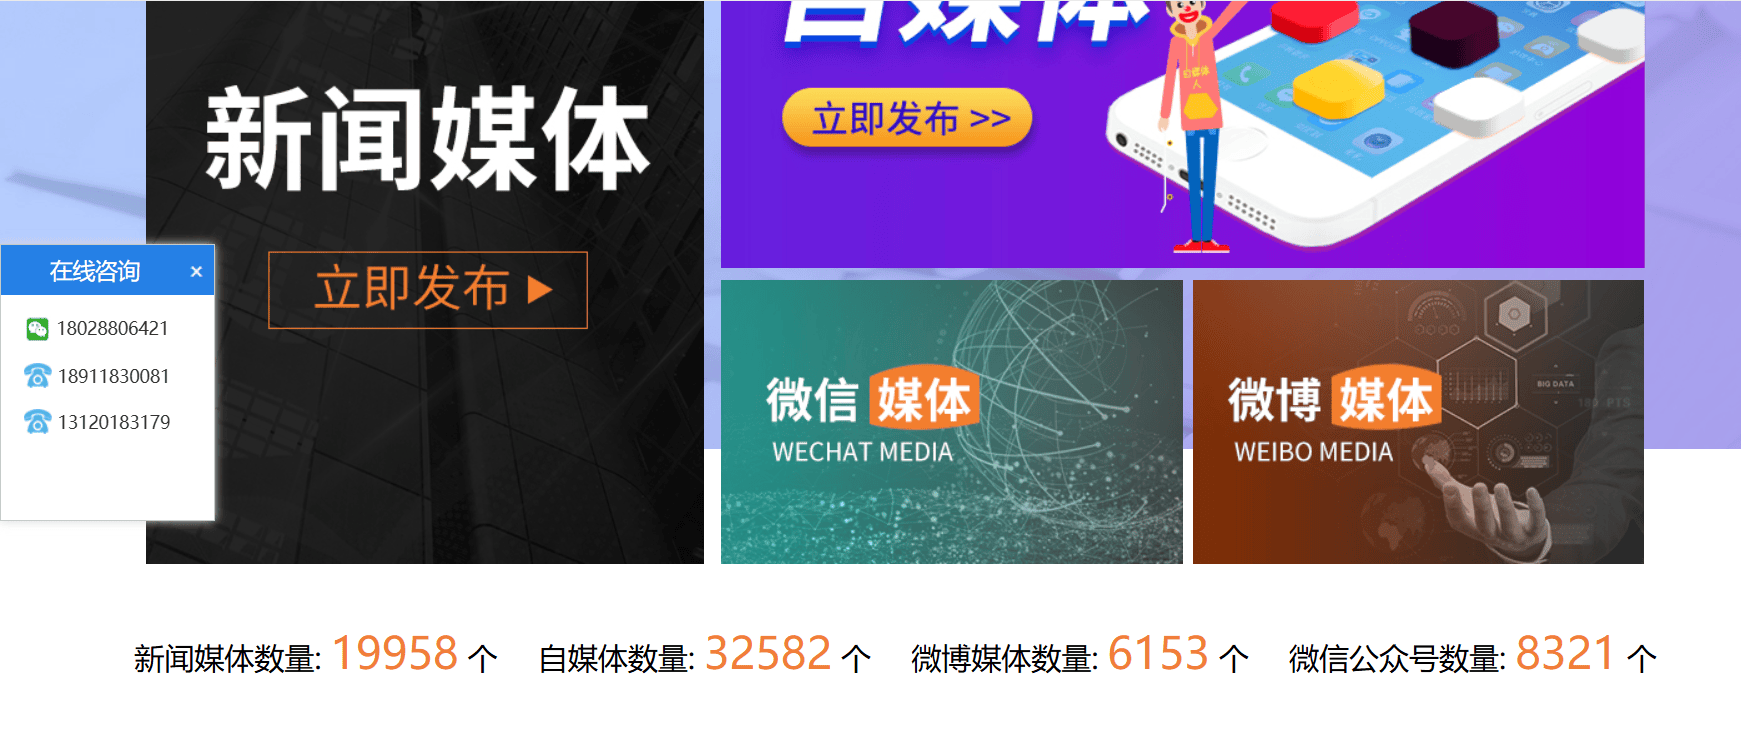 湖北壹丹传媒有限公司发稿系统正式上线